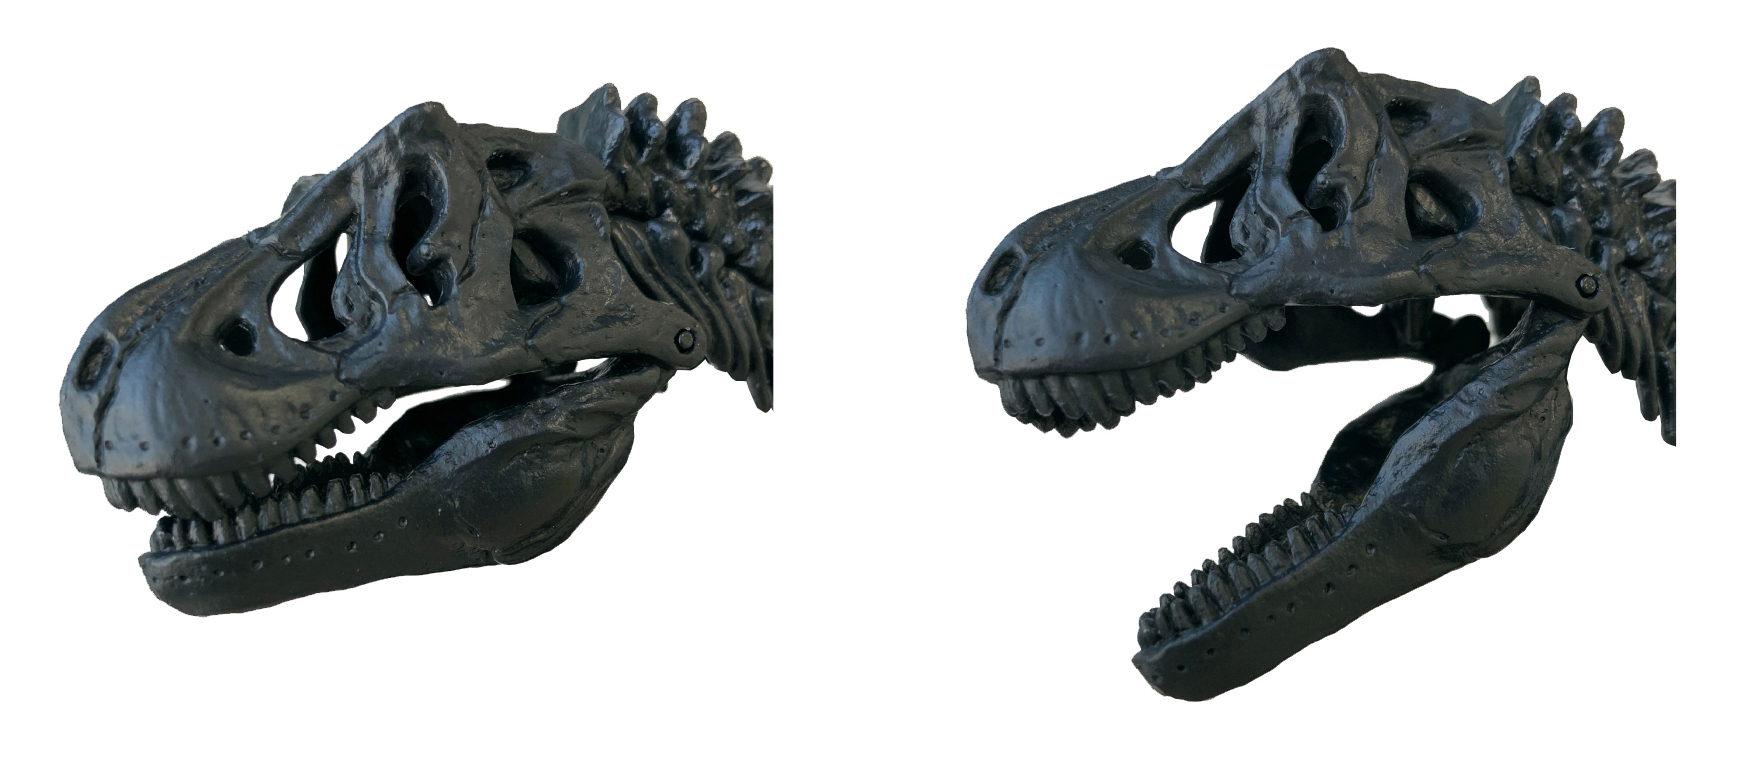 科学と学習PRESENTS<br>ティラノサウルス骨格模型&ポスター